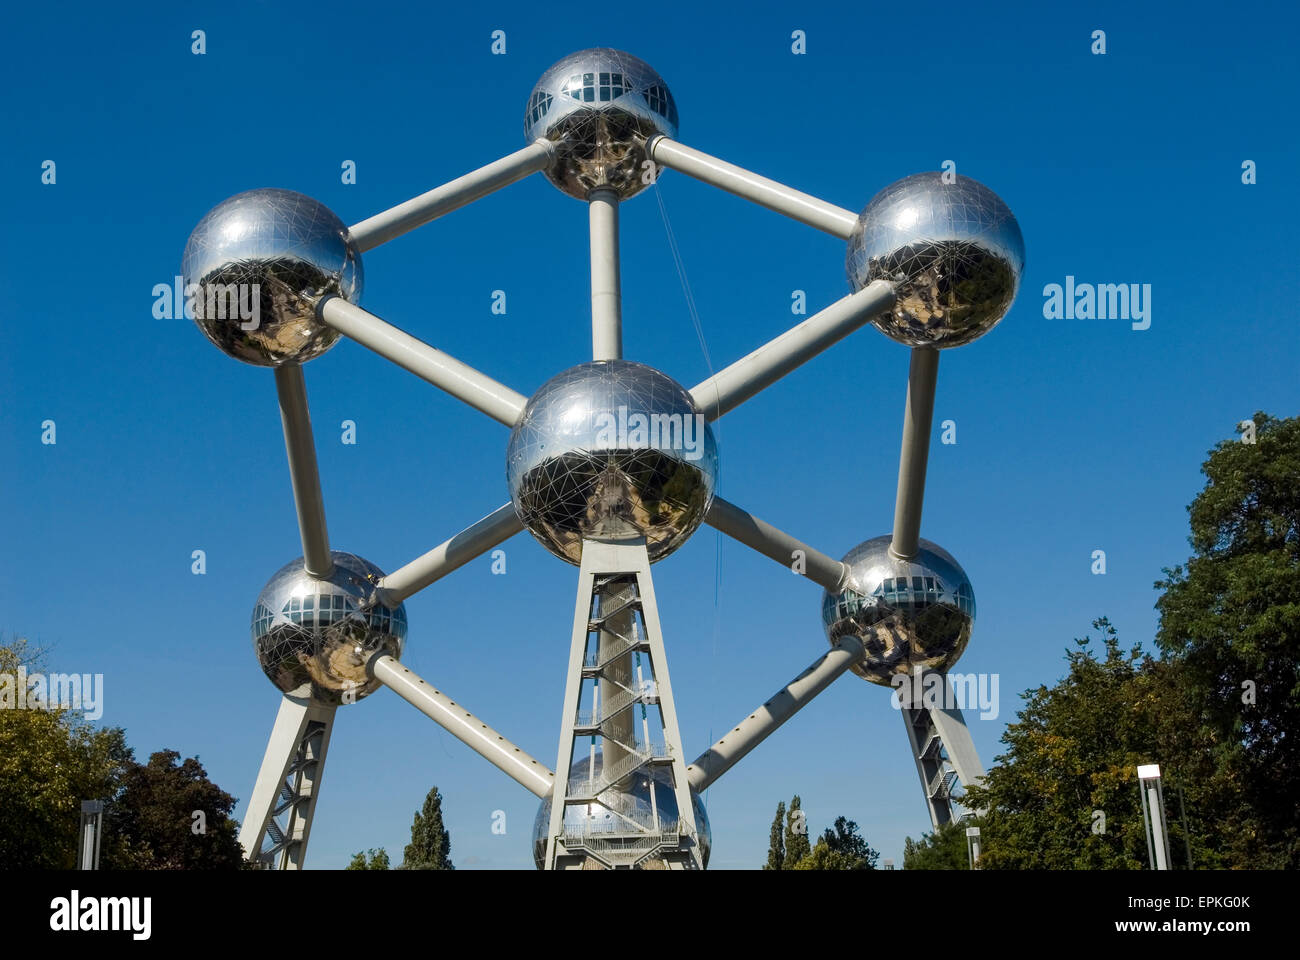 Atomium Worldfamous Monument de fer un noyau atomique Bruxelles Belgique Europe Banque D'Images